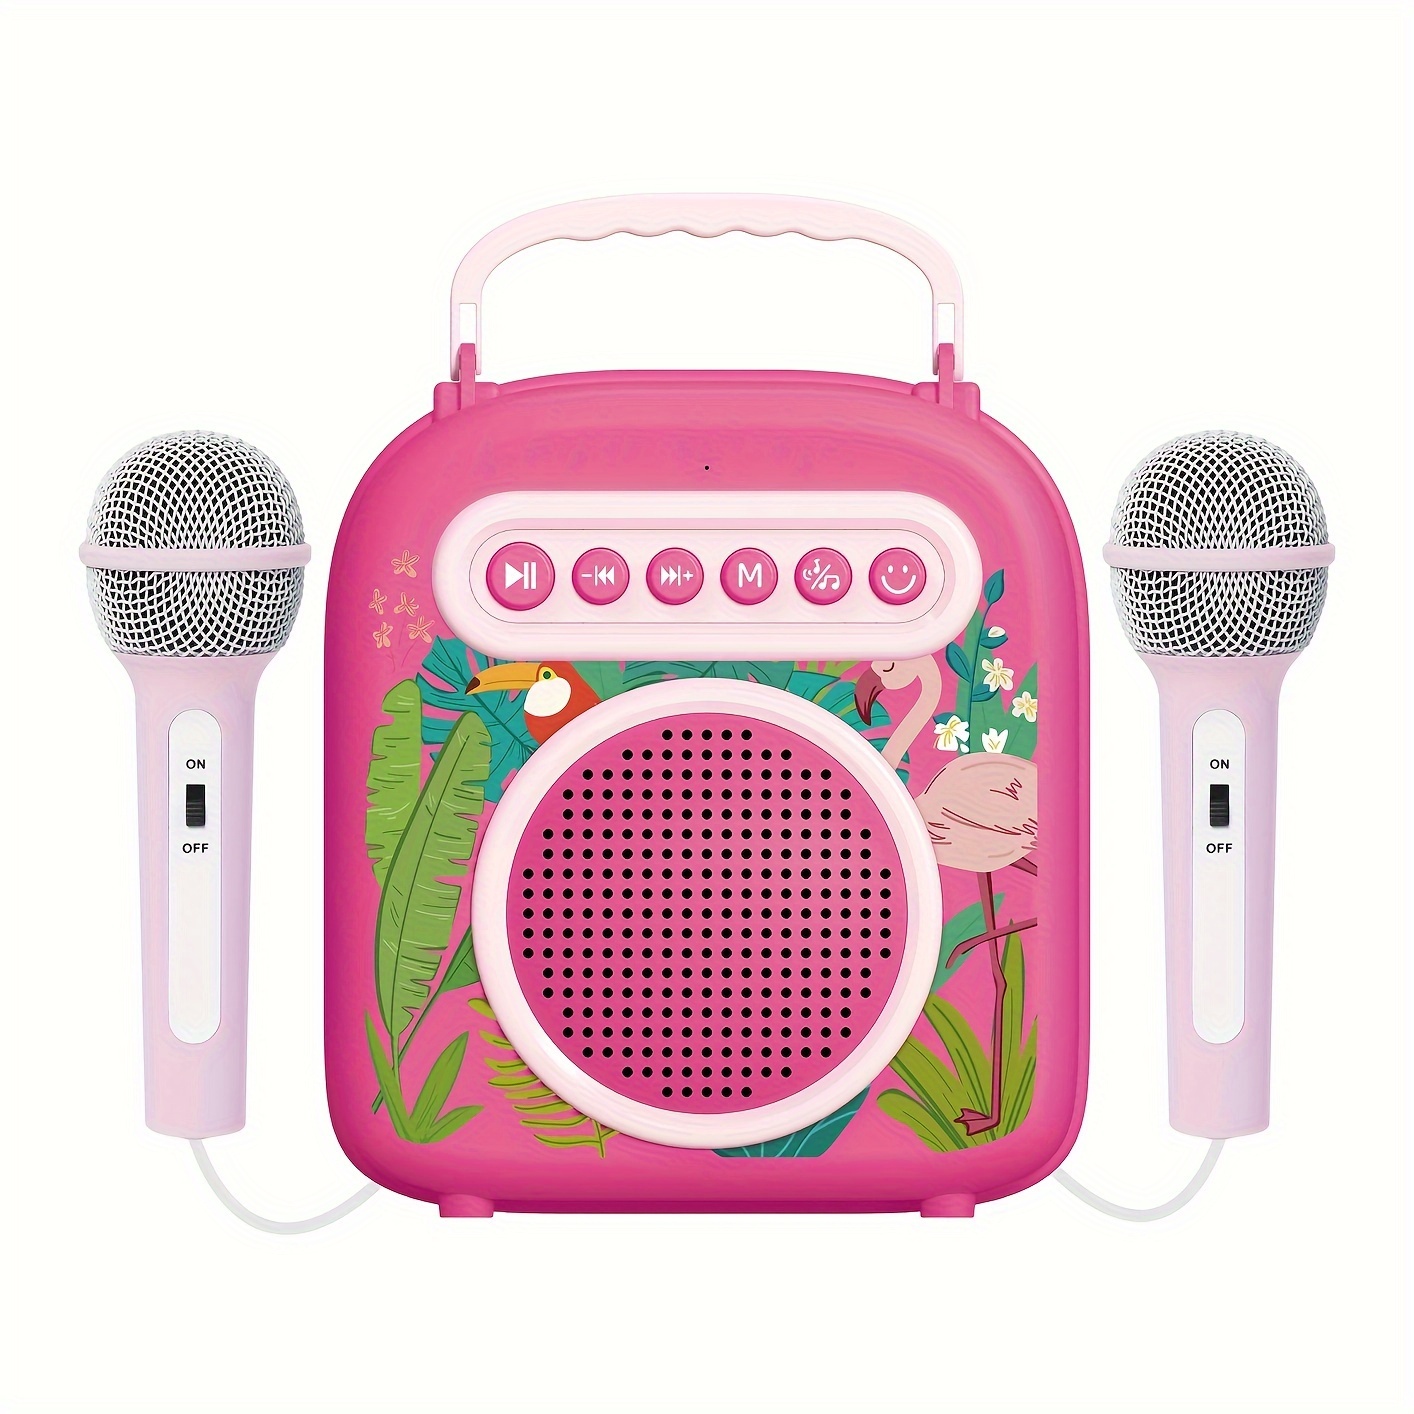  FULLIFE - Máquina de karaoke para adultos/niños con 2  micrófonos inalámbricos, sistema de altavoces PA Bluetooth portátil,  máquina de sonido HD con eco y corte vocal, compatible con TF/USB, entrada 